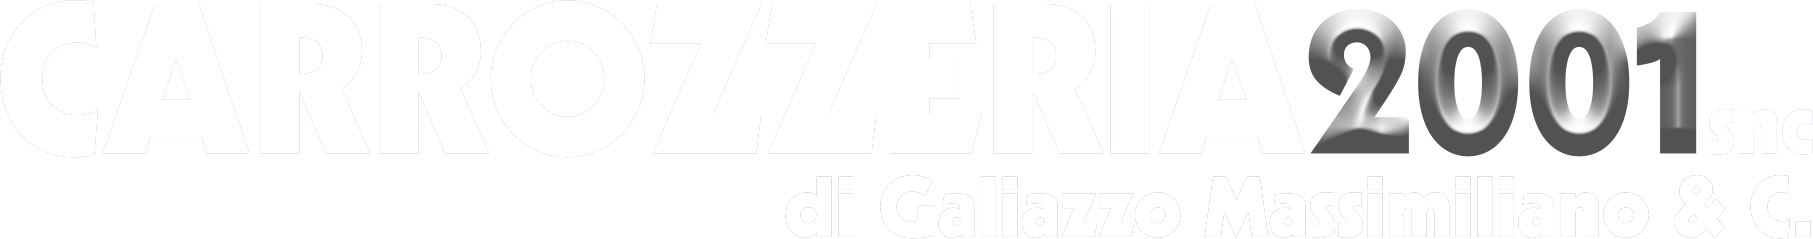 carrozzeria2001_logo